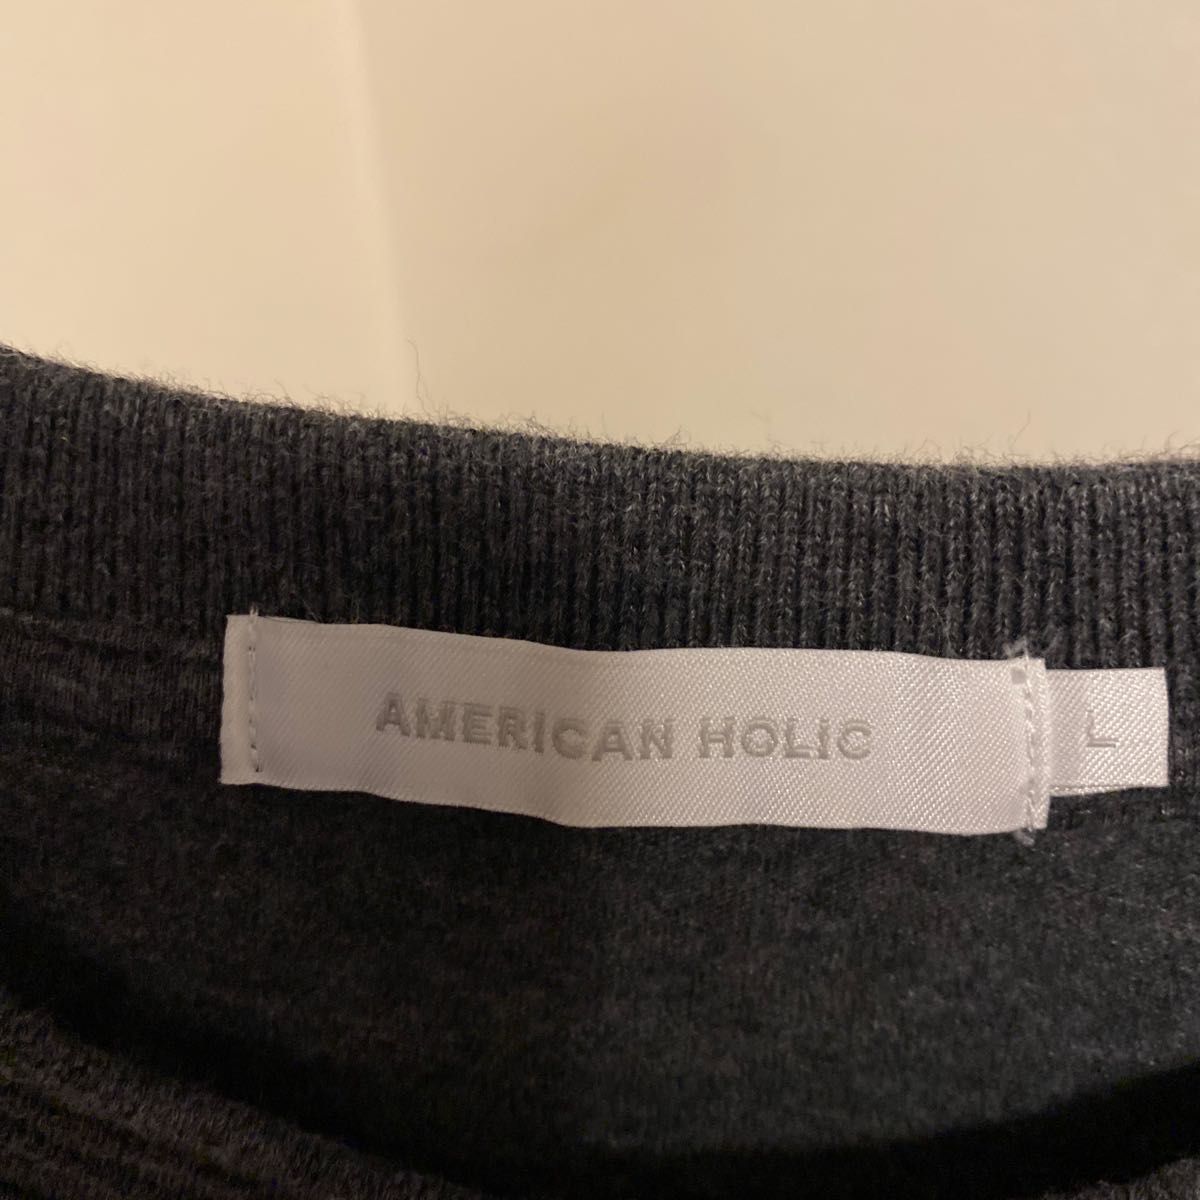 着用回数数回。AmericanHolic。レディース半袖Tシャツ。サイズはLサイズとなりす。